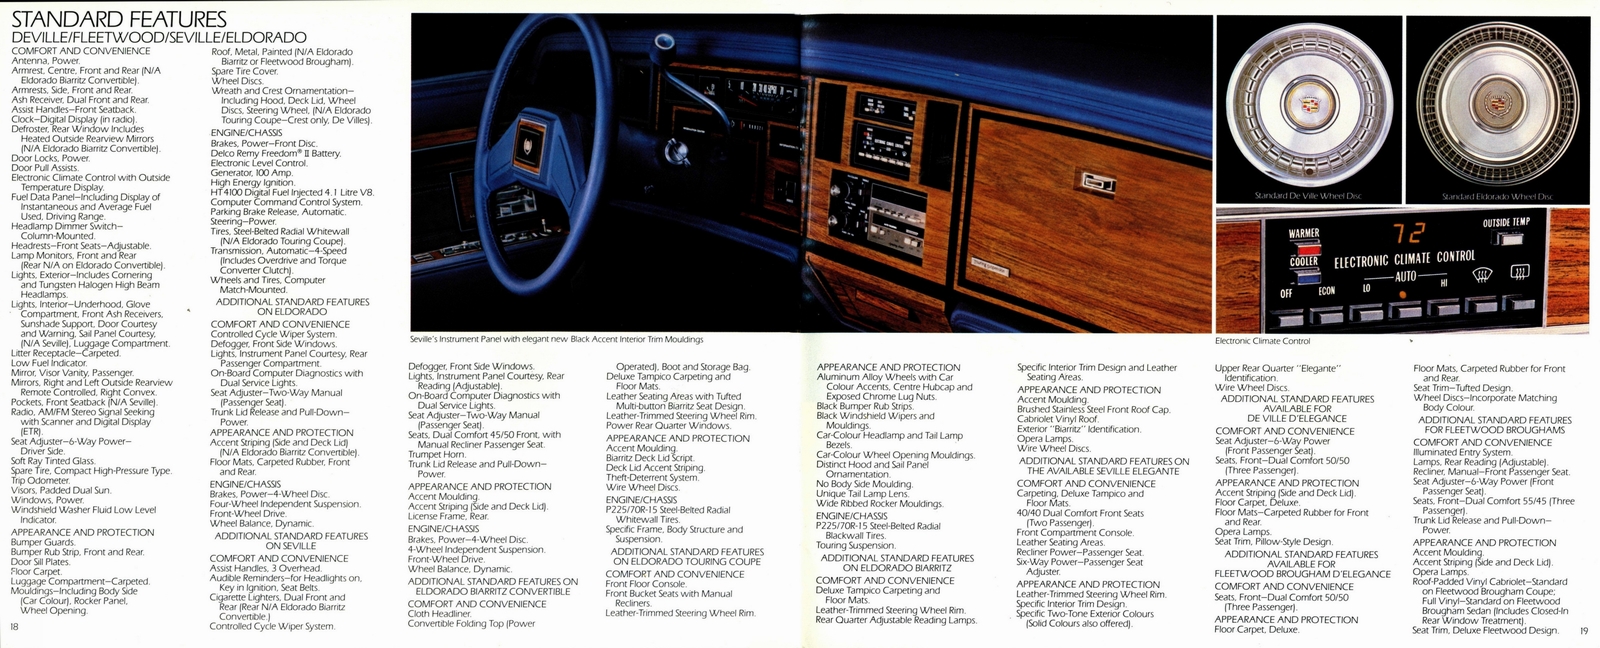 n_1984 Cadillac Full Line Prestige (Cdn)-18-19.jpg